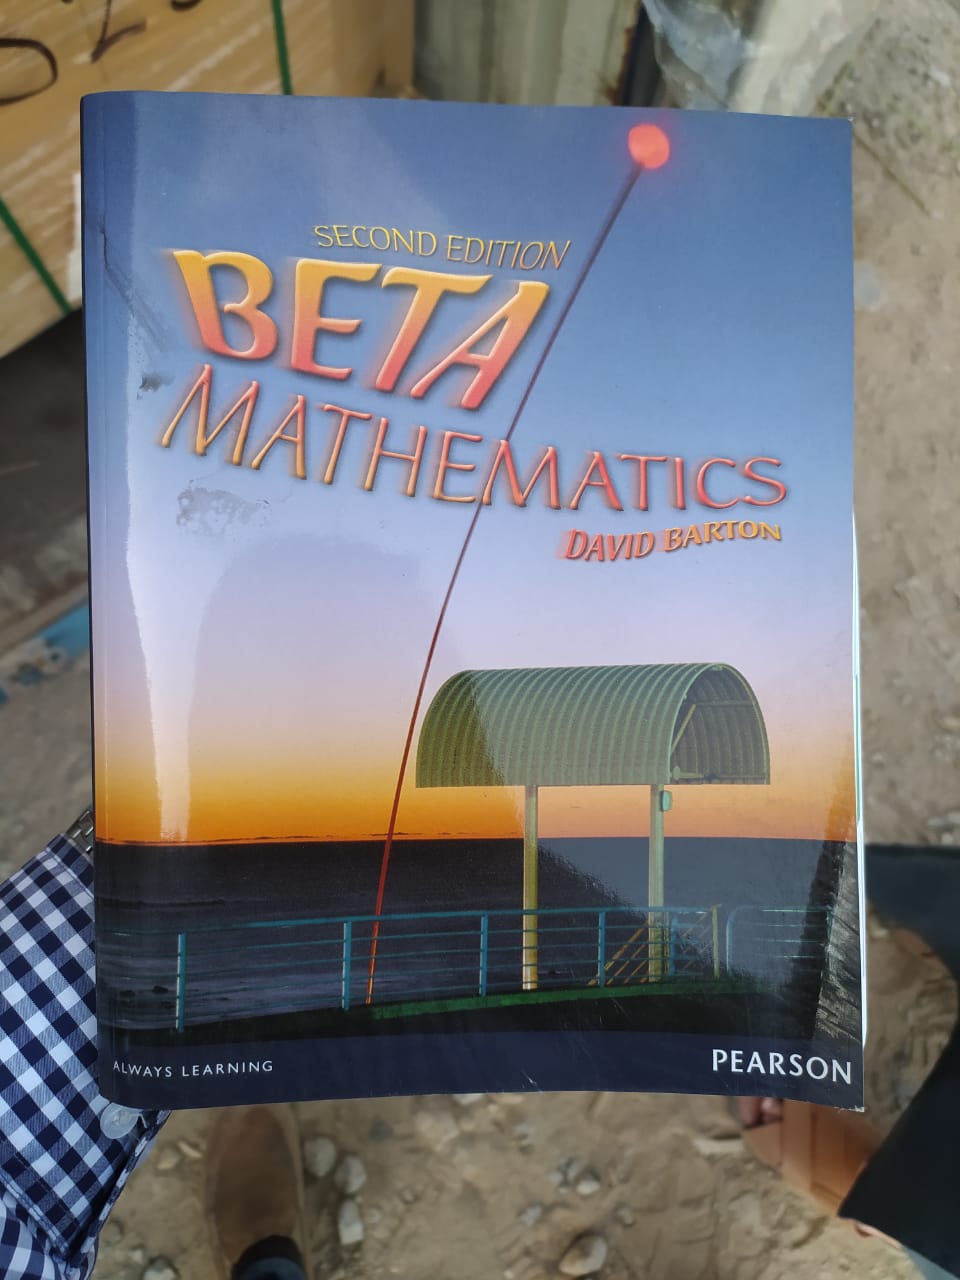 beta mathematics 2nd edition